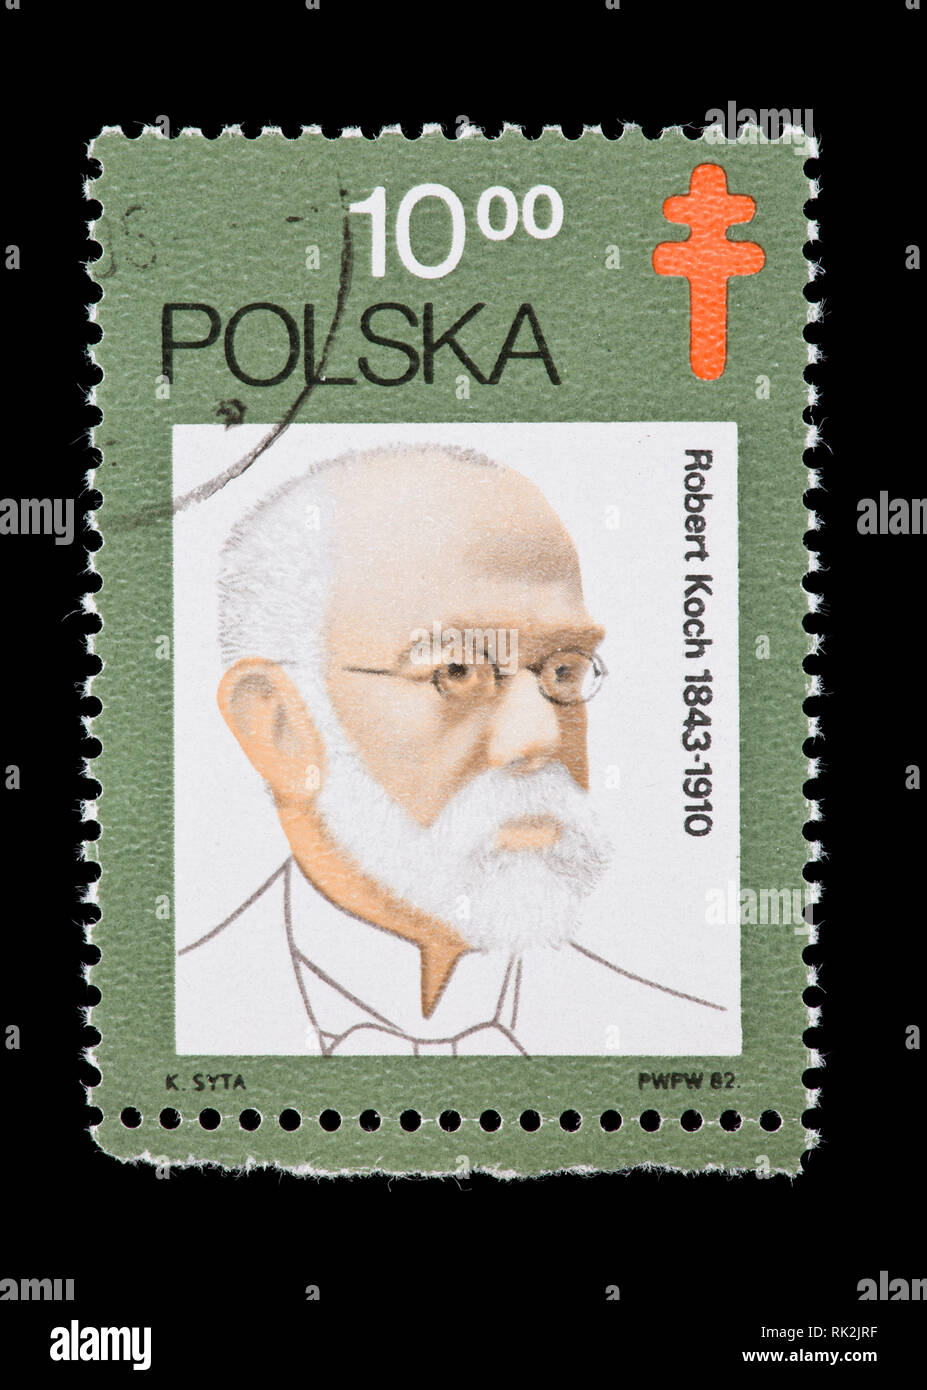 Timbre-poste de la Pologne représentant Robert Koch, découvreur de l'anthrax et des bactéries tuberculeuses Banque D'Images